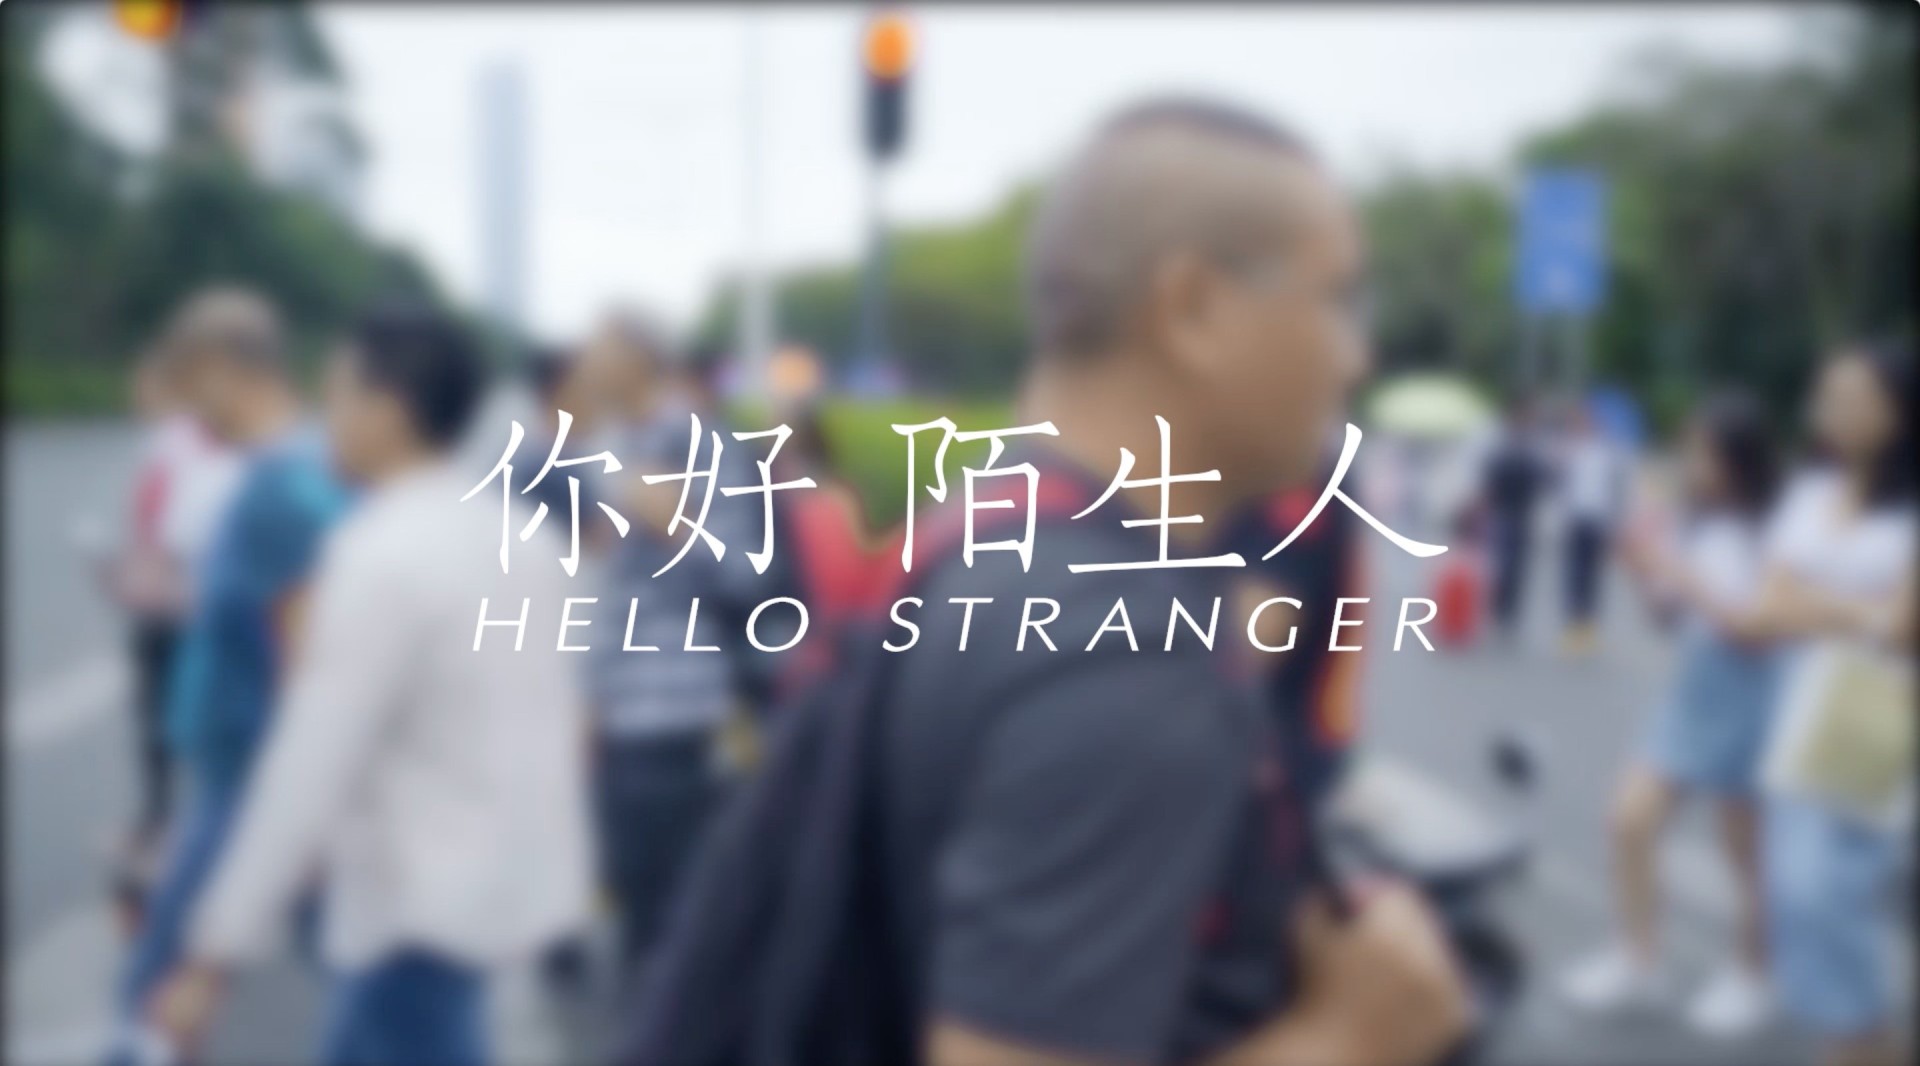 《你好，陌生人》微人文纪录片 2019中国国际短片节入围展映